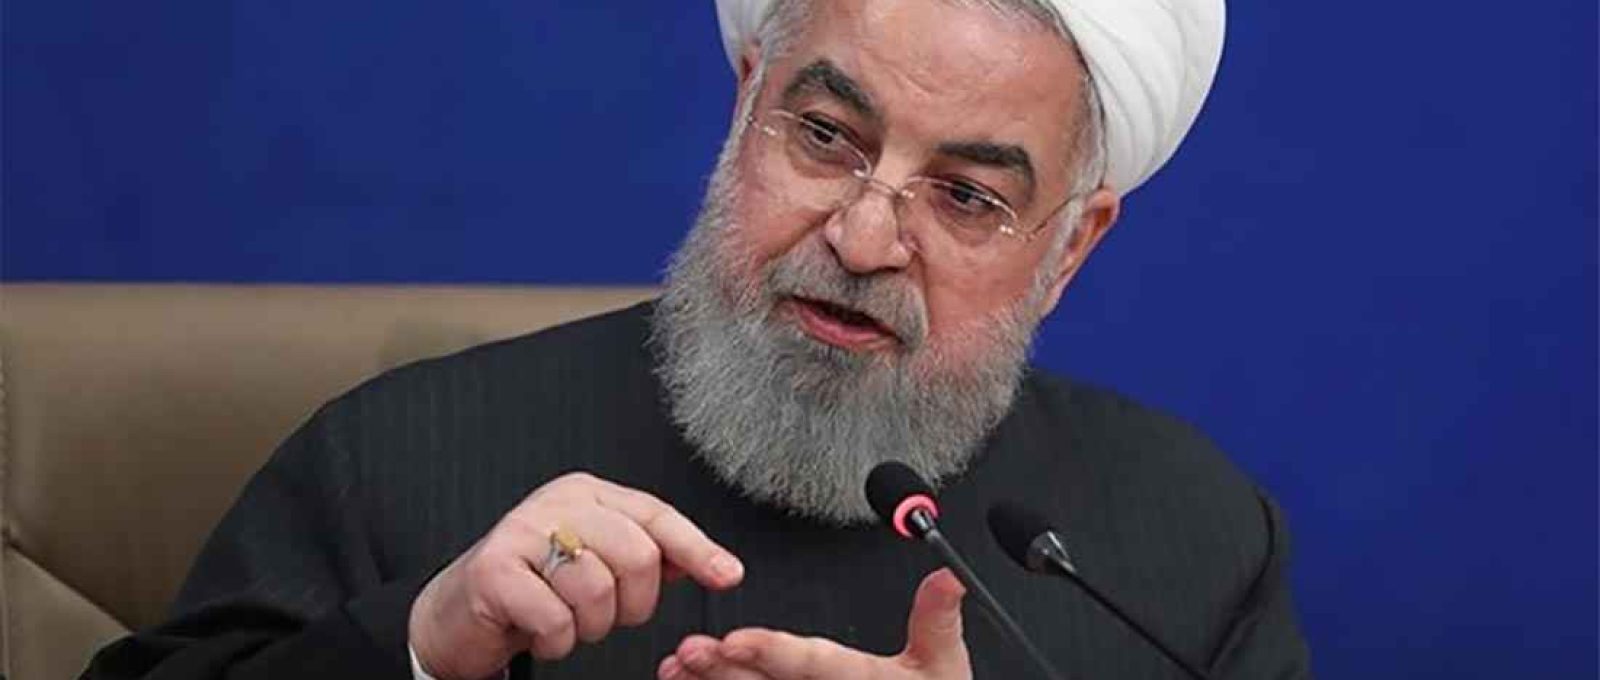 O presidente iraniano, Hassan Rouhani (Fars News Agency).